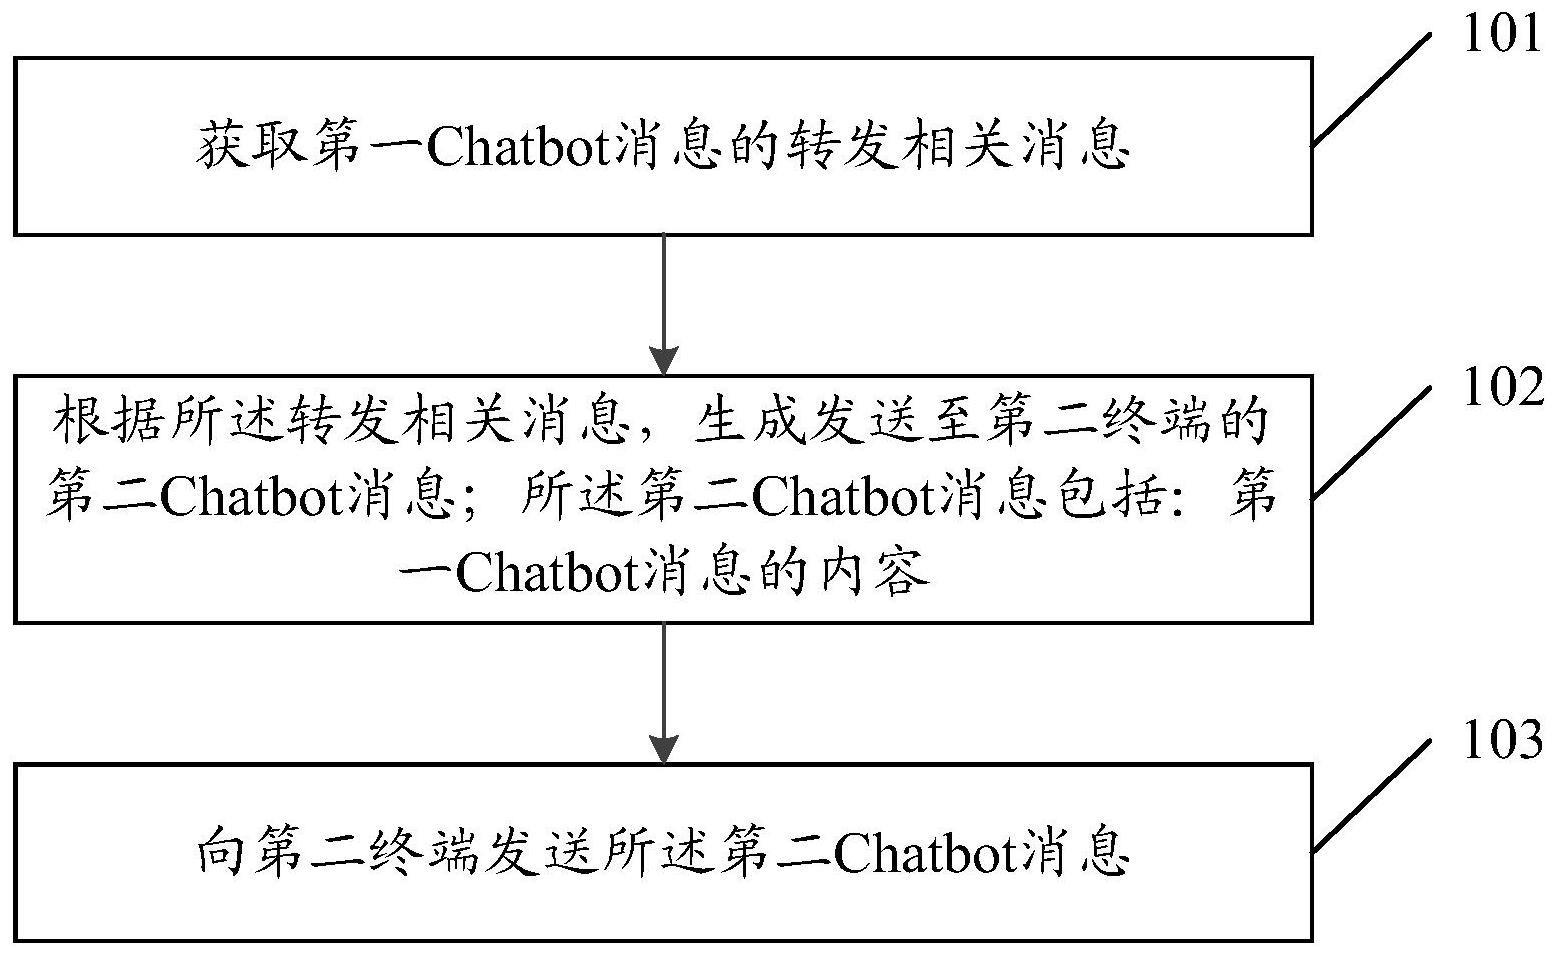 消息转发方法、Chatbot、消息处理网元及终端与流程